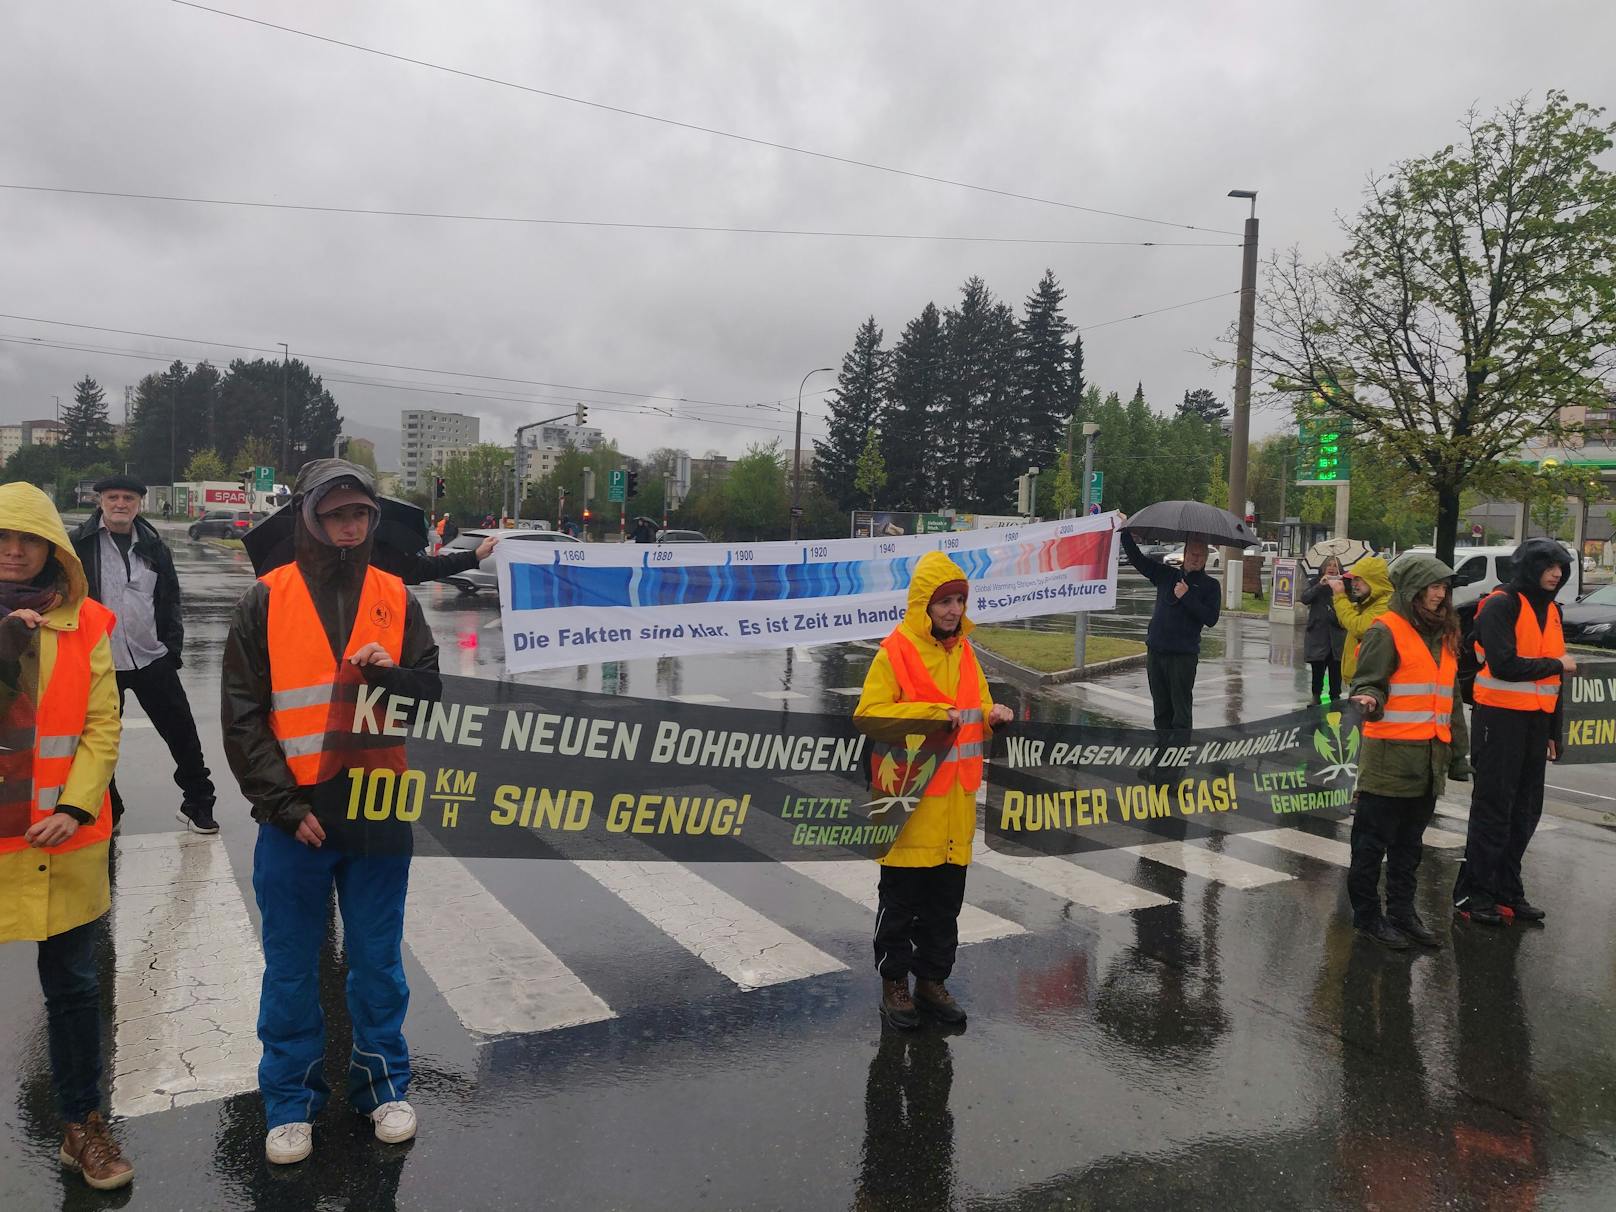 Regennasse Straßen und Autofahrer, die aus Frust zum Hupkonzert ansetzten – beides konnte die Aktivisten der "Letzten Generation" am Montag in Innsbruck wenig ...